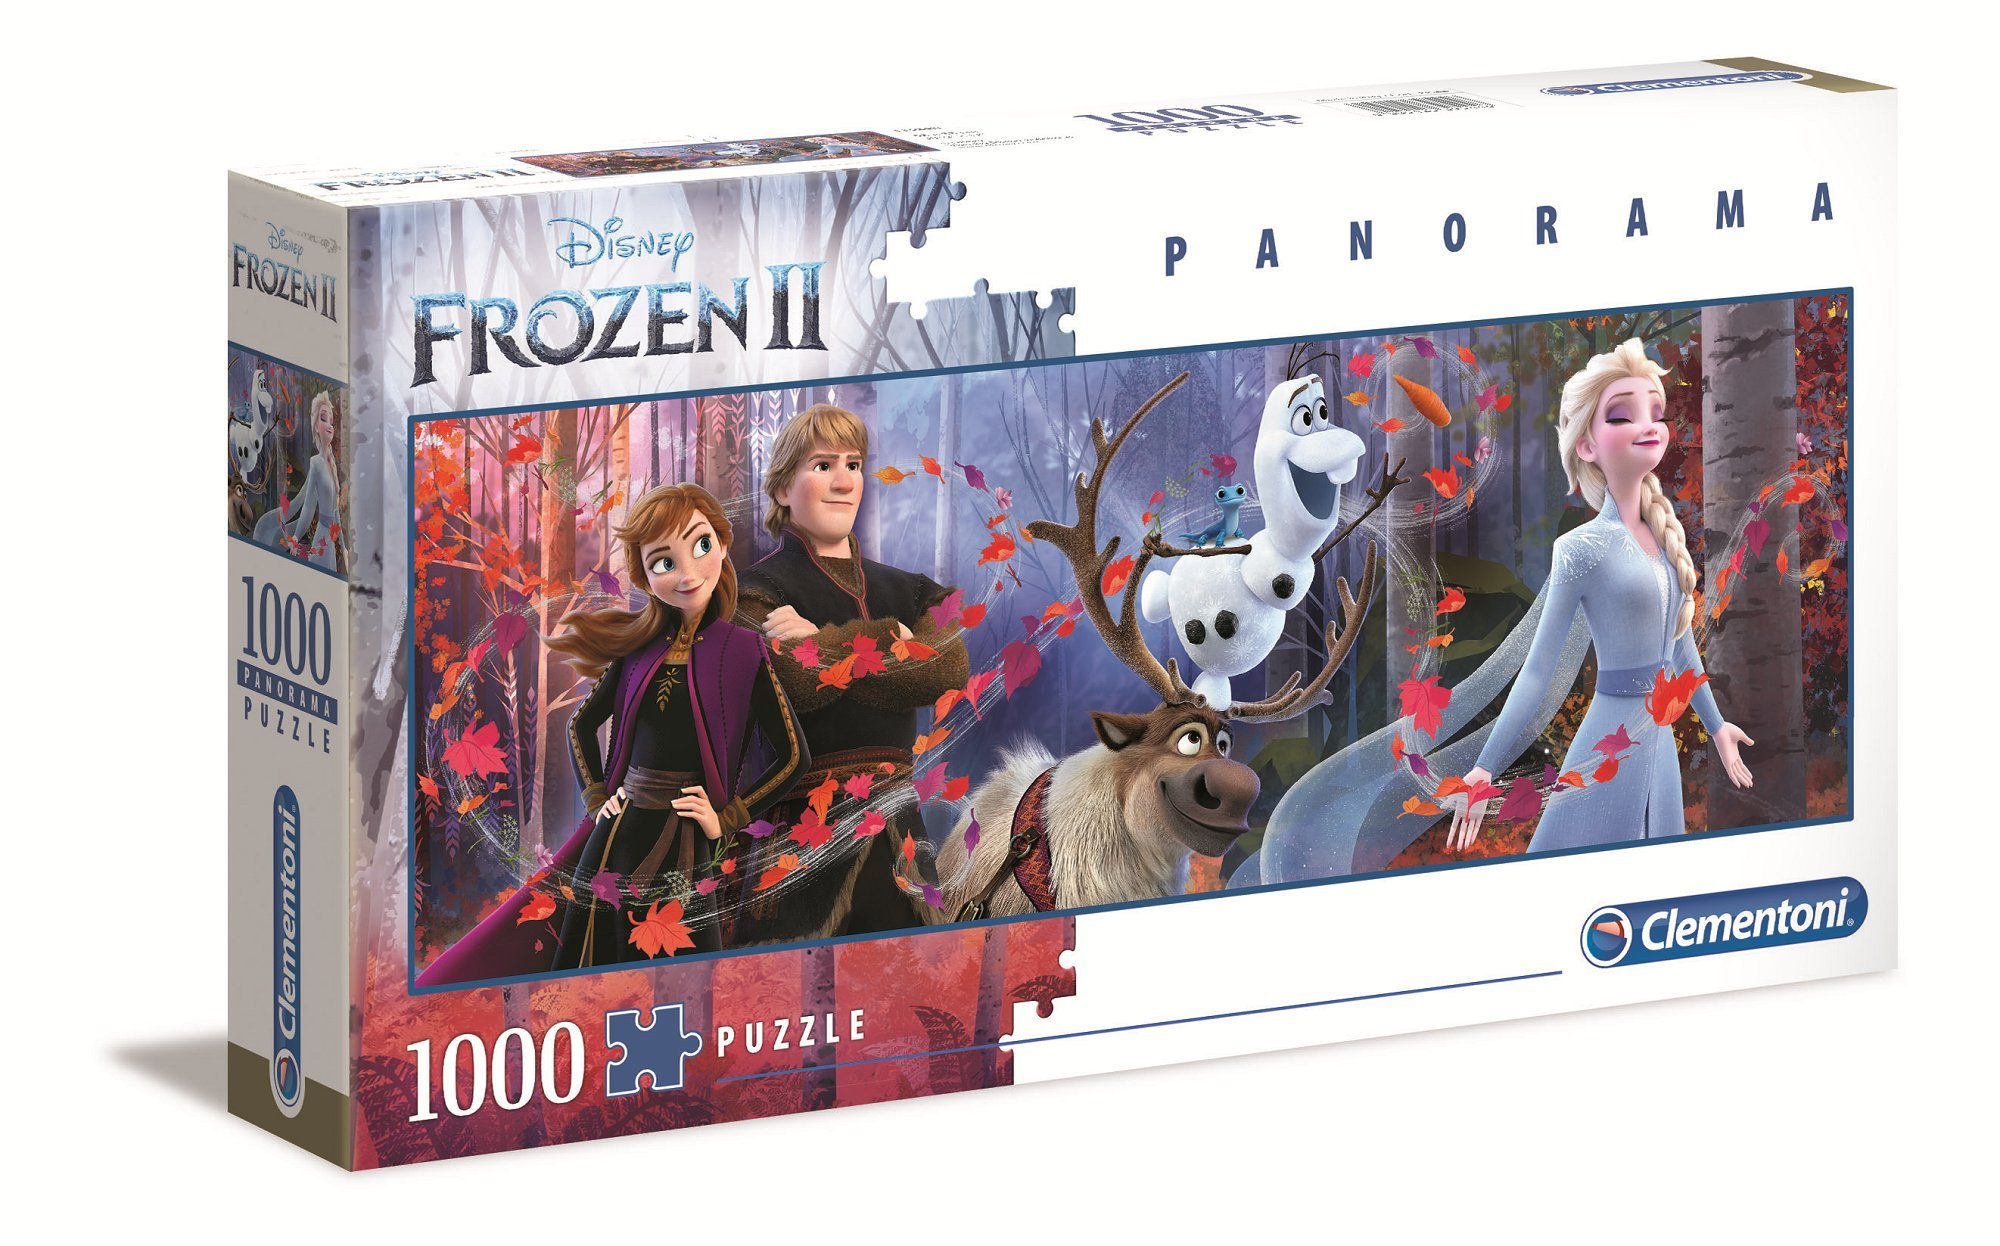 Clementoni® Puzzle 39544 Frozen 2 Panorama Puzzle 1000 Teile, 1000 Puzzleteile